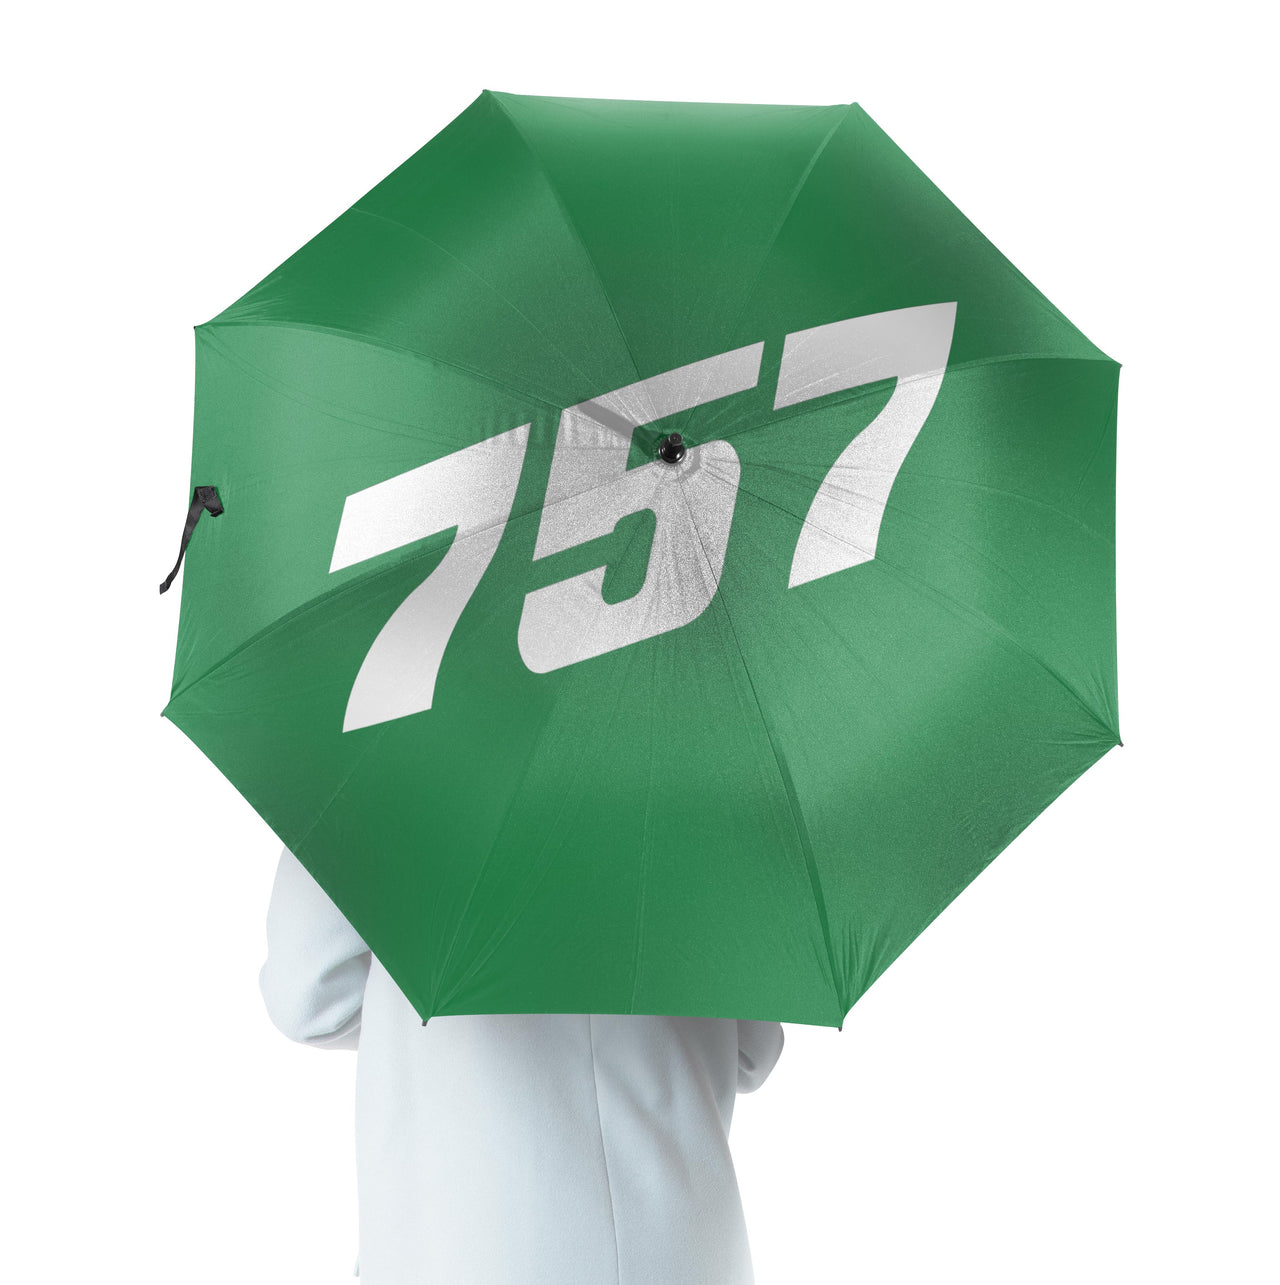 757 Flat Text Designed Umbrella